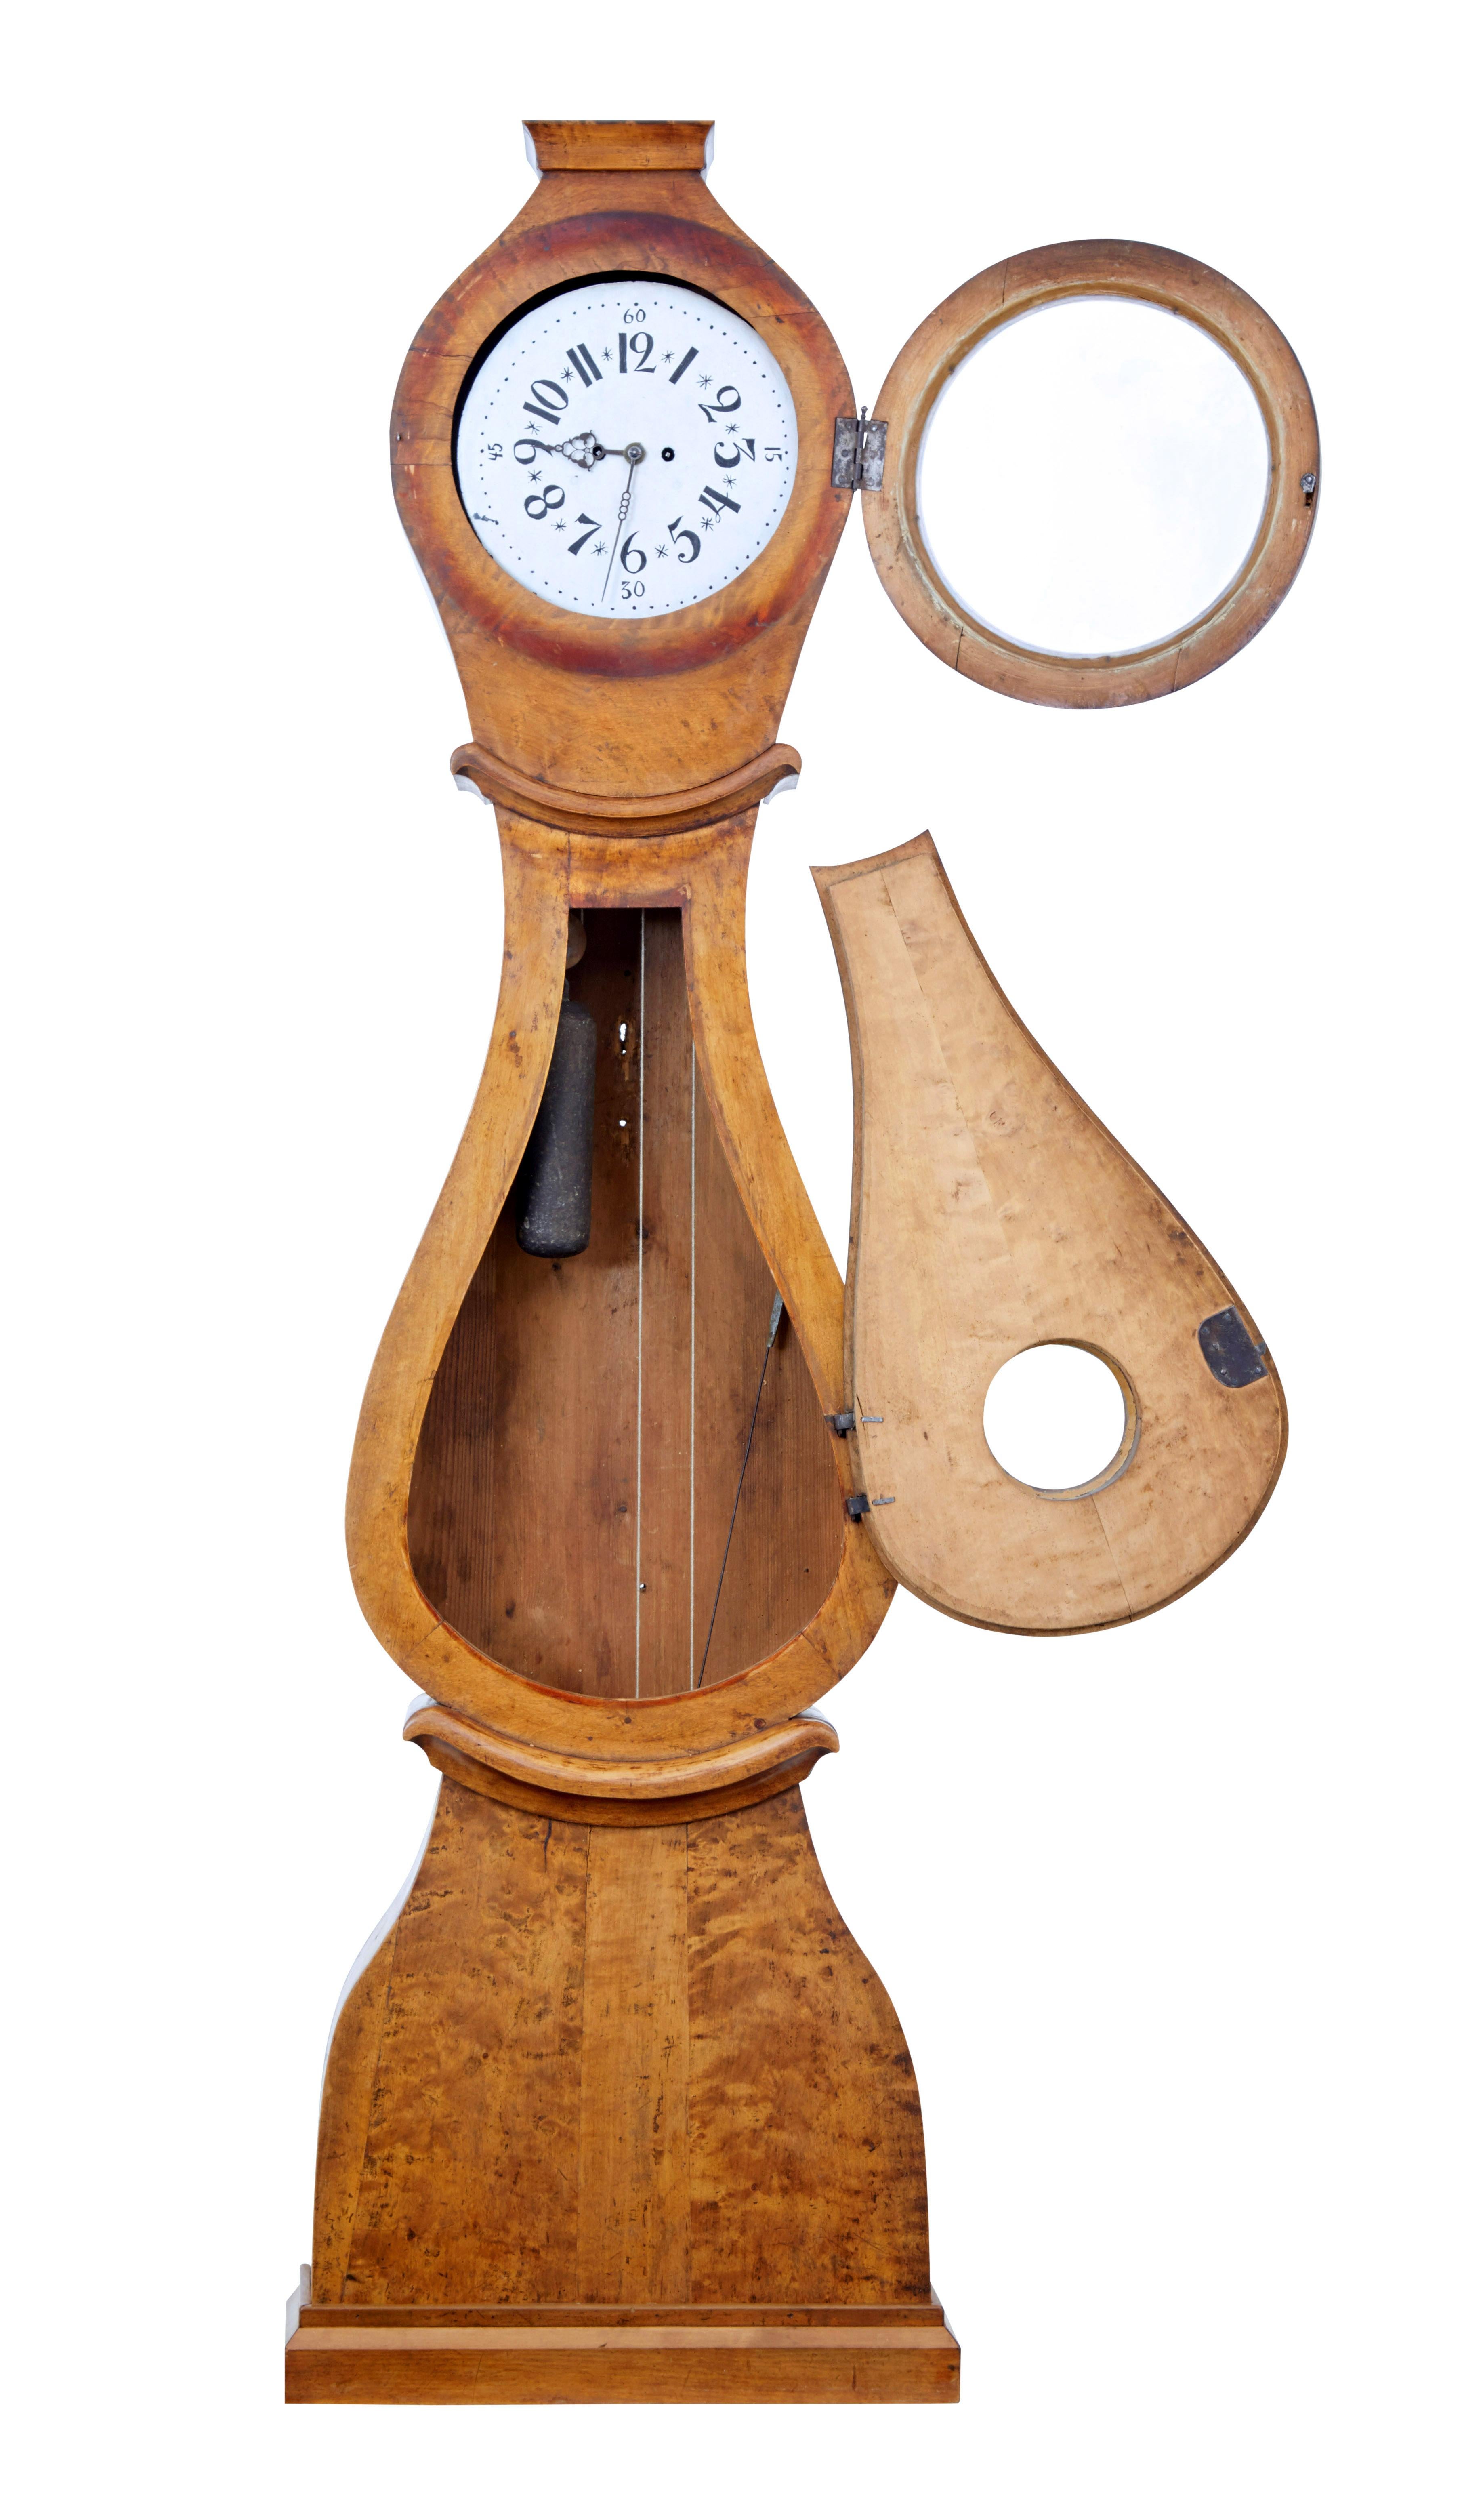 Horloge suédoise à long boîtier Mora du XIXe siècle, vers 1850.

Présenté dans sa finition d'origine en bouleau qui a pris une bonne patine. Cadran d'horloge en émail naïf peint à la main, avec quelques légères pertes et frottements.

Capot rond